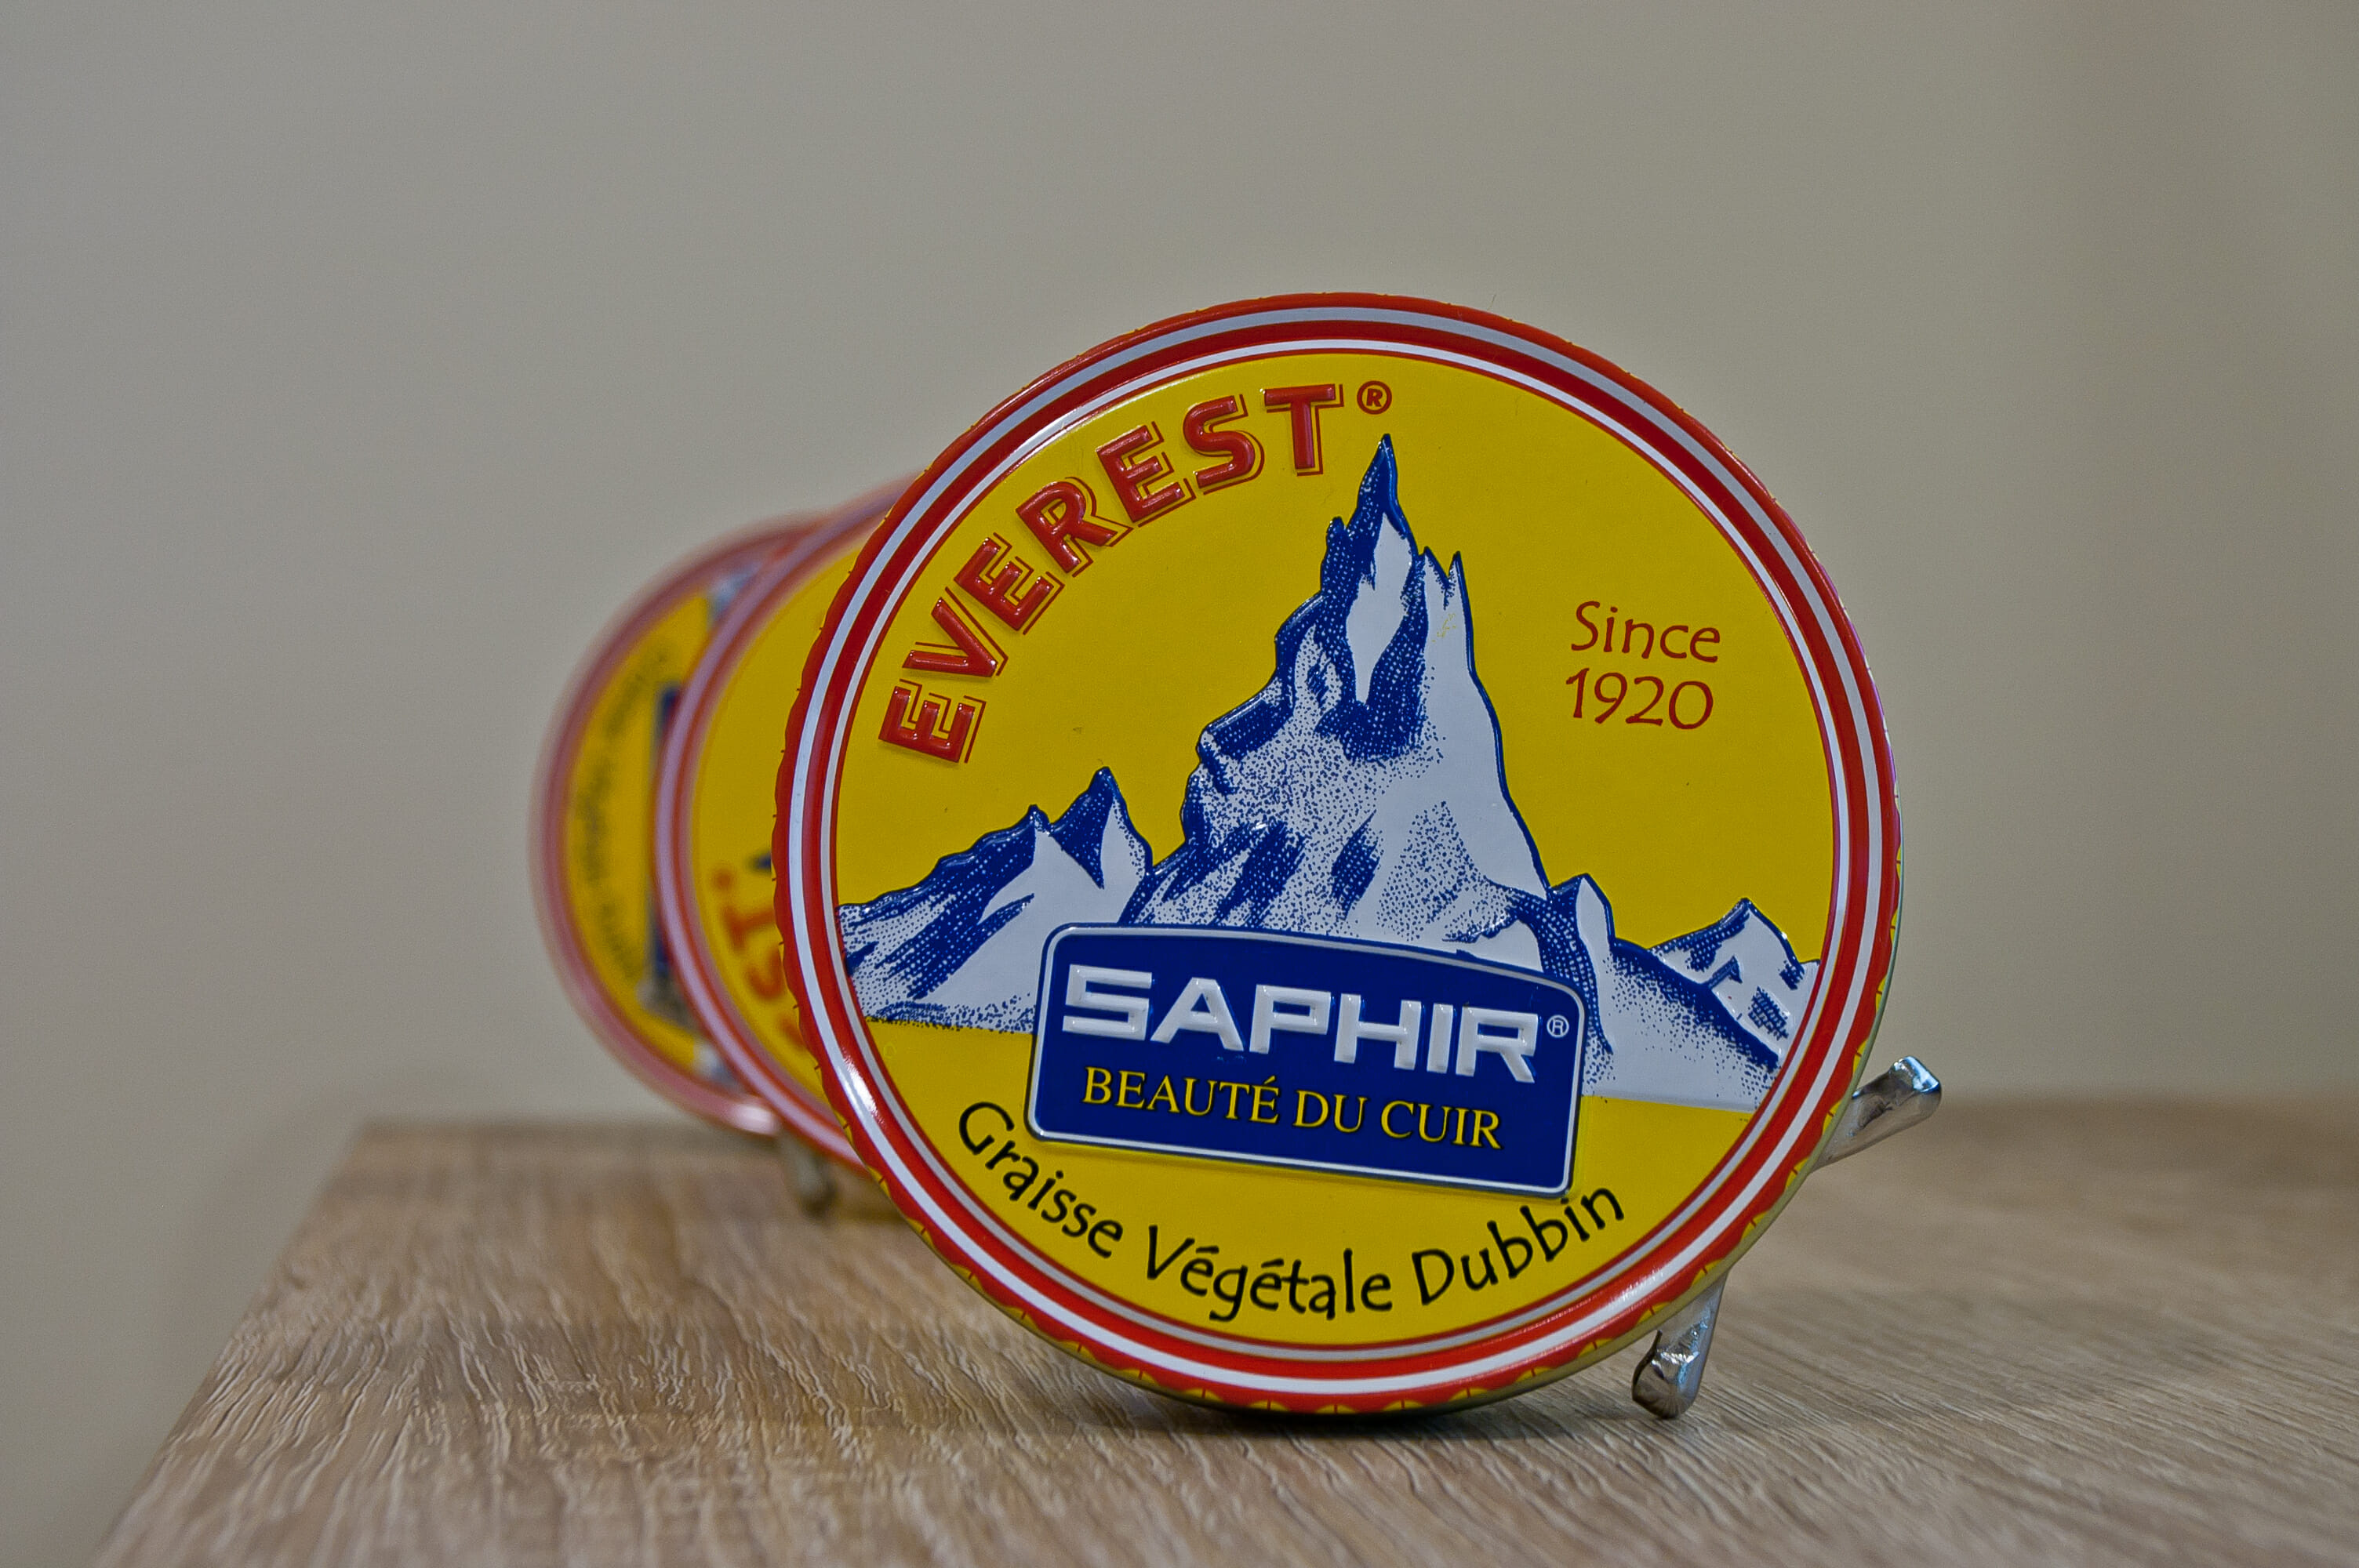 Saphir Everest